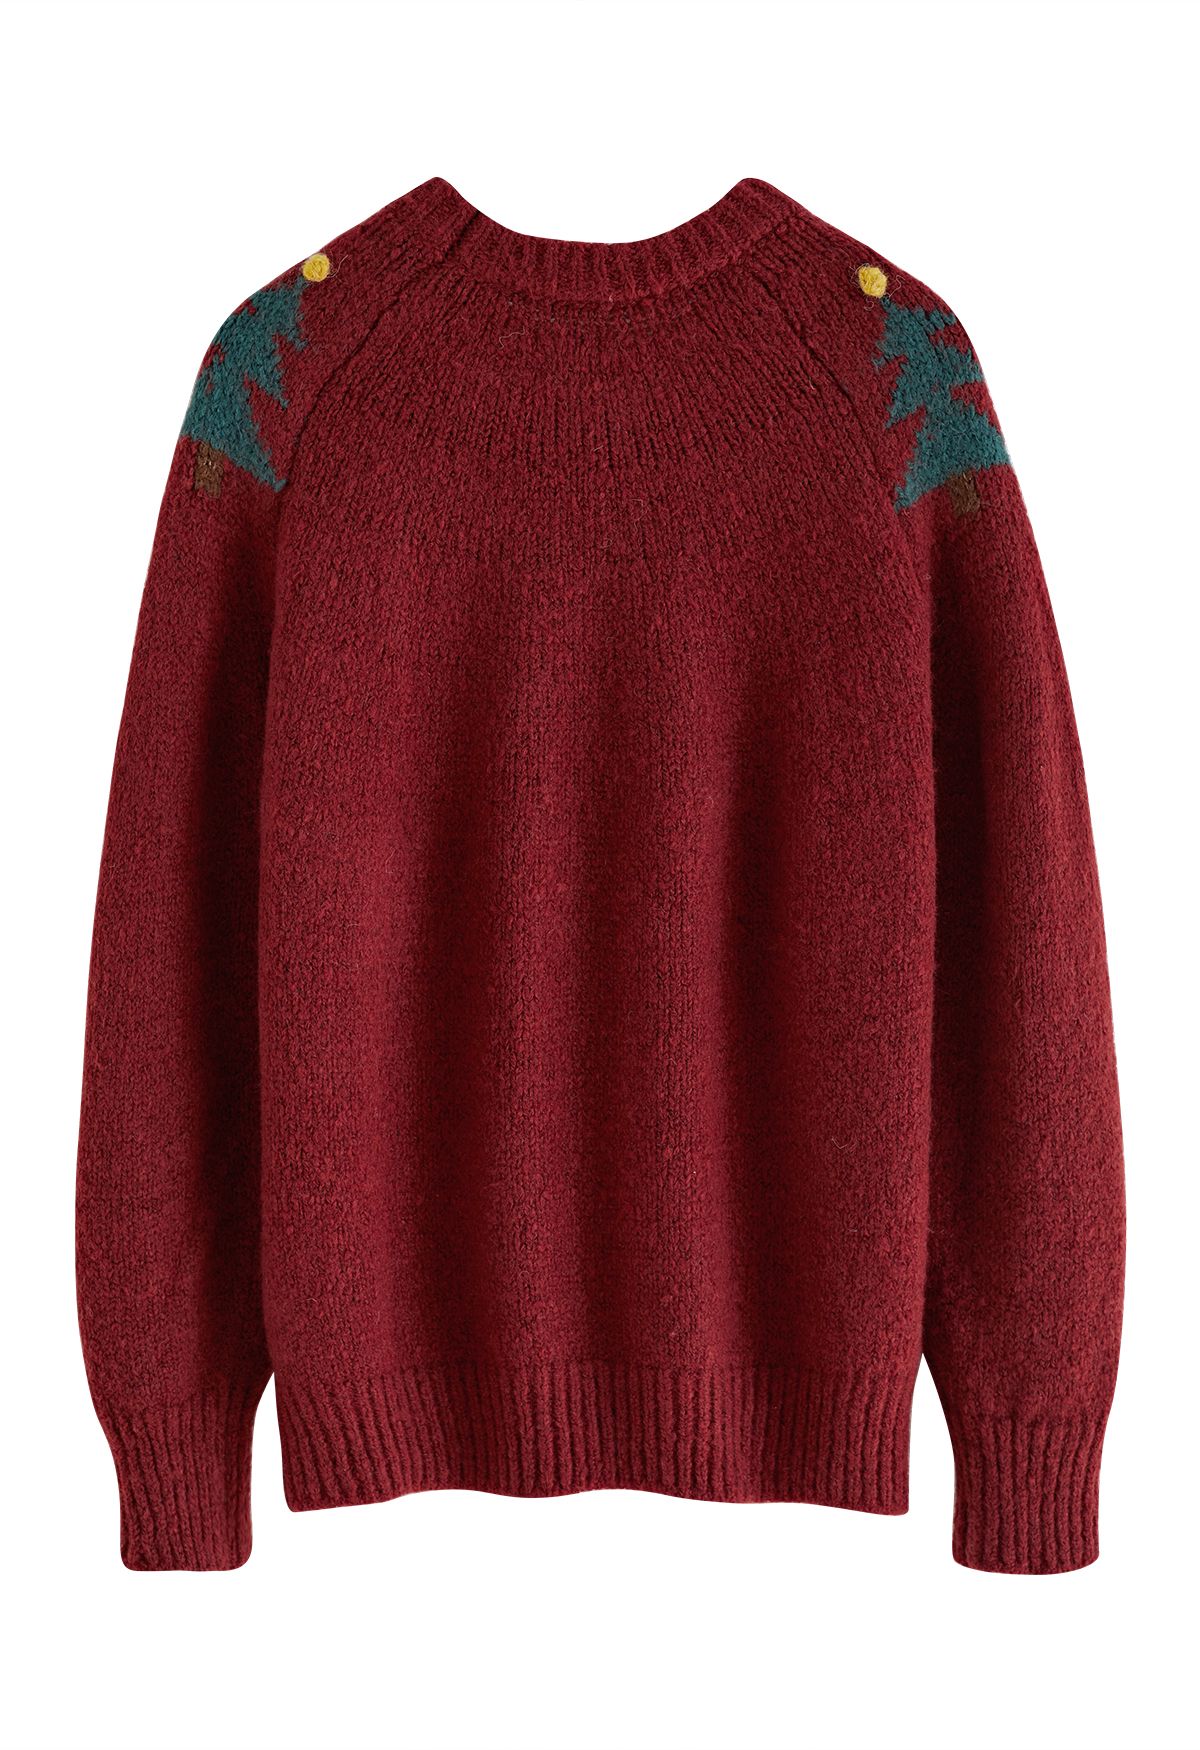 Suéter de punto grueso con pompones de árbol de Navidad en rojo